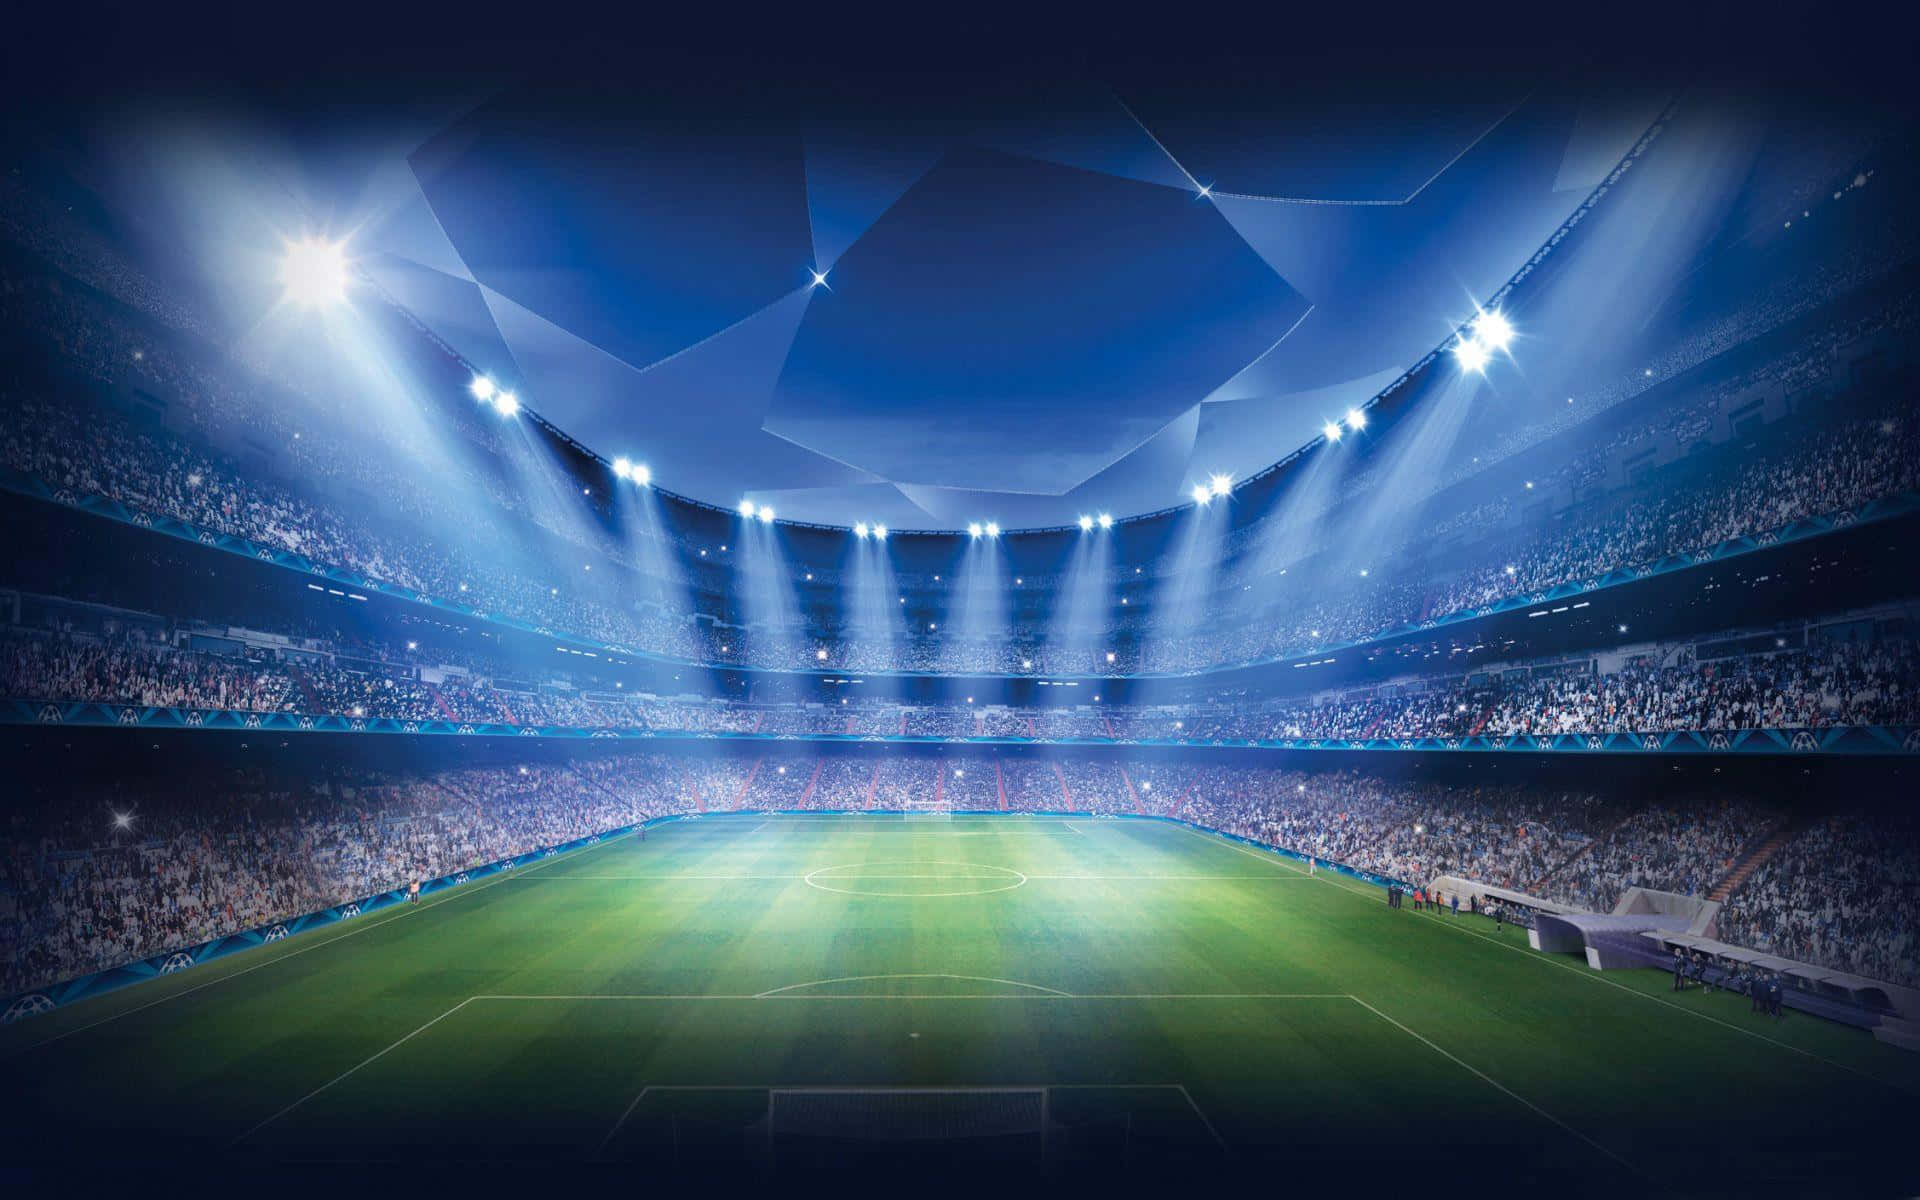 Grafiskbakgrundsbild Av Fotbollsplanen På Arenan.